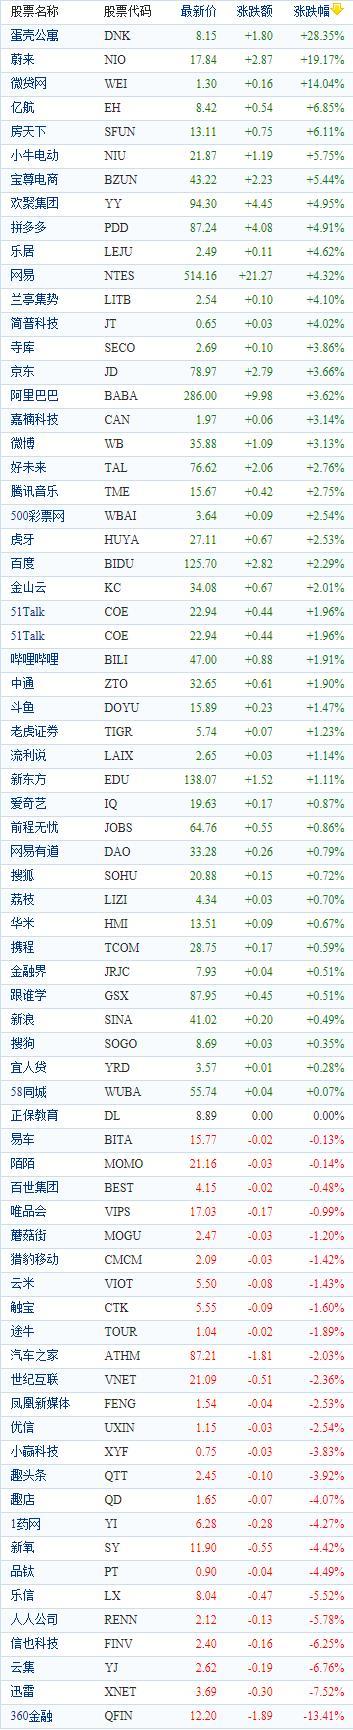 中国概念股周二收盘涨跌互现 蔚来上涨19.17%报收17.84美元